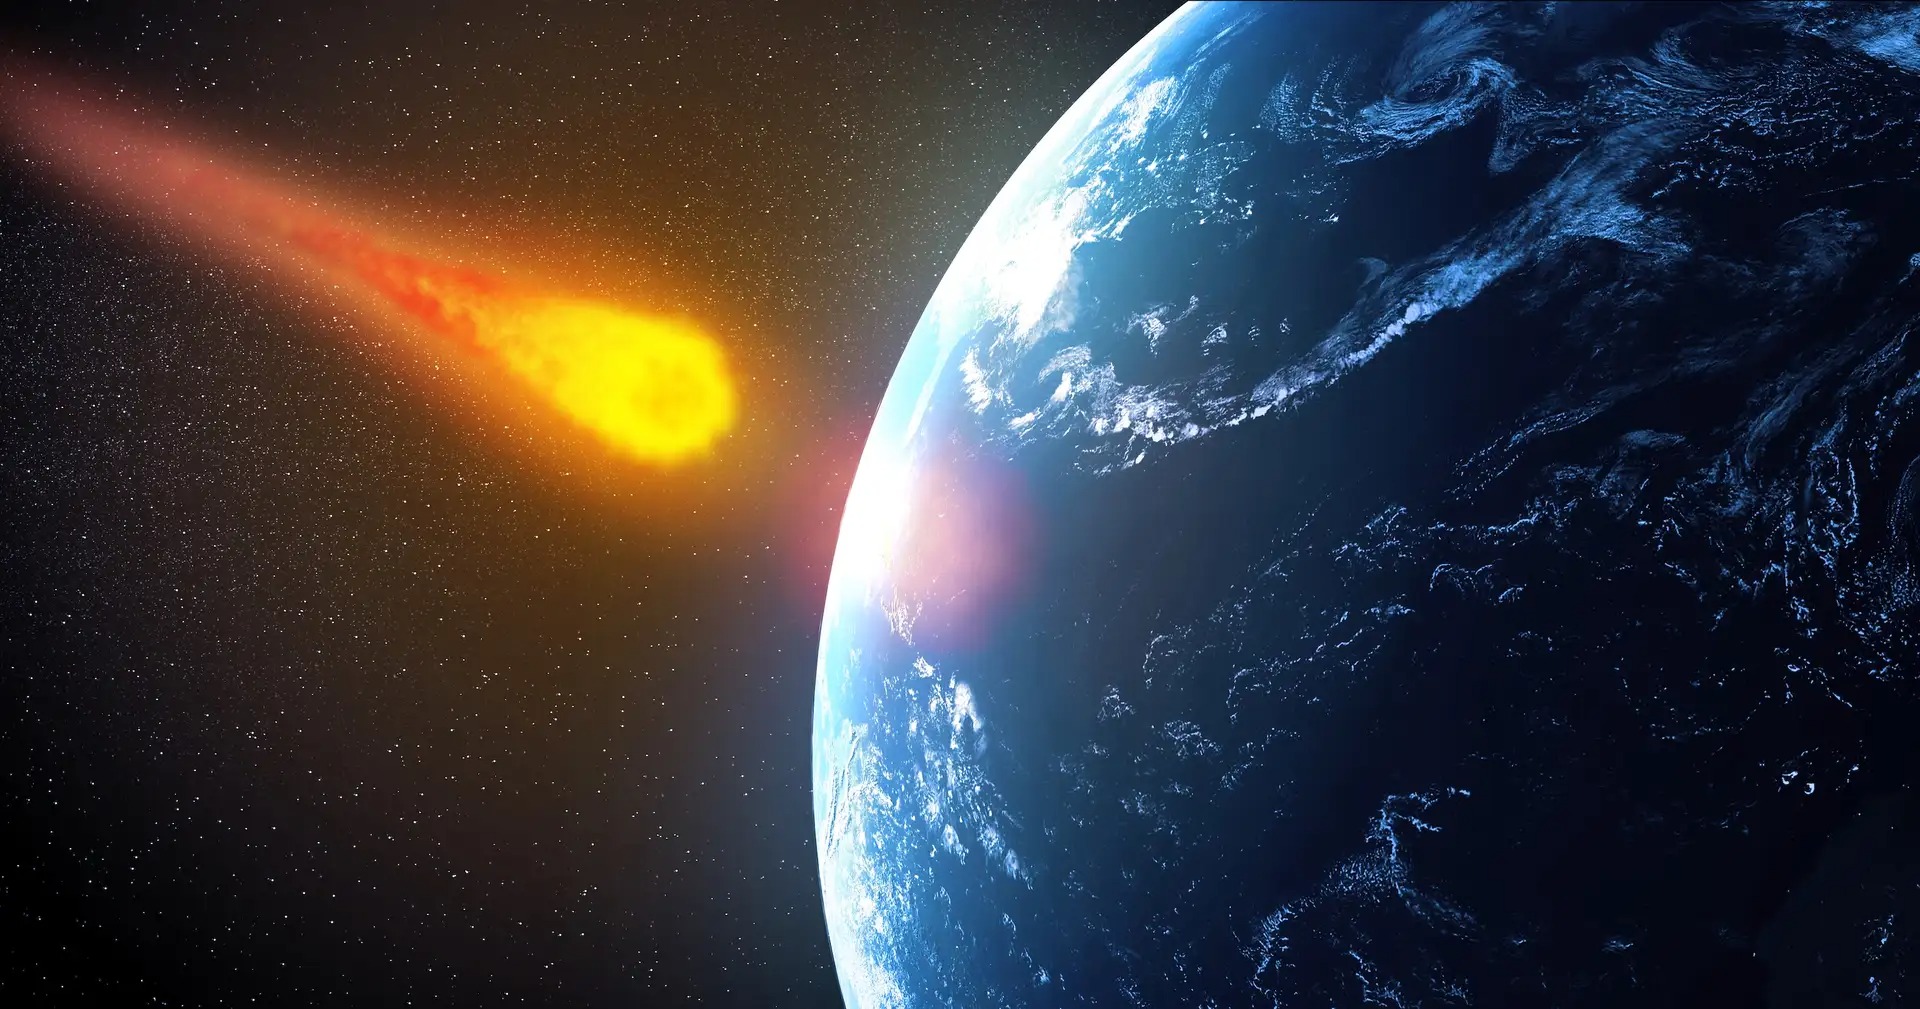 asteroide terre 2046 - Müssen wir uns Sorgen um diesen Asteroiden machen, der 2046 auf die Erde stürzen könnte?